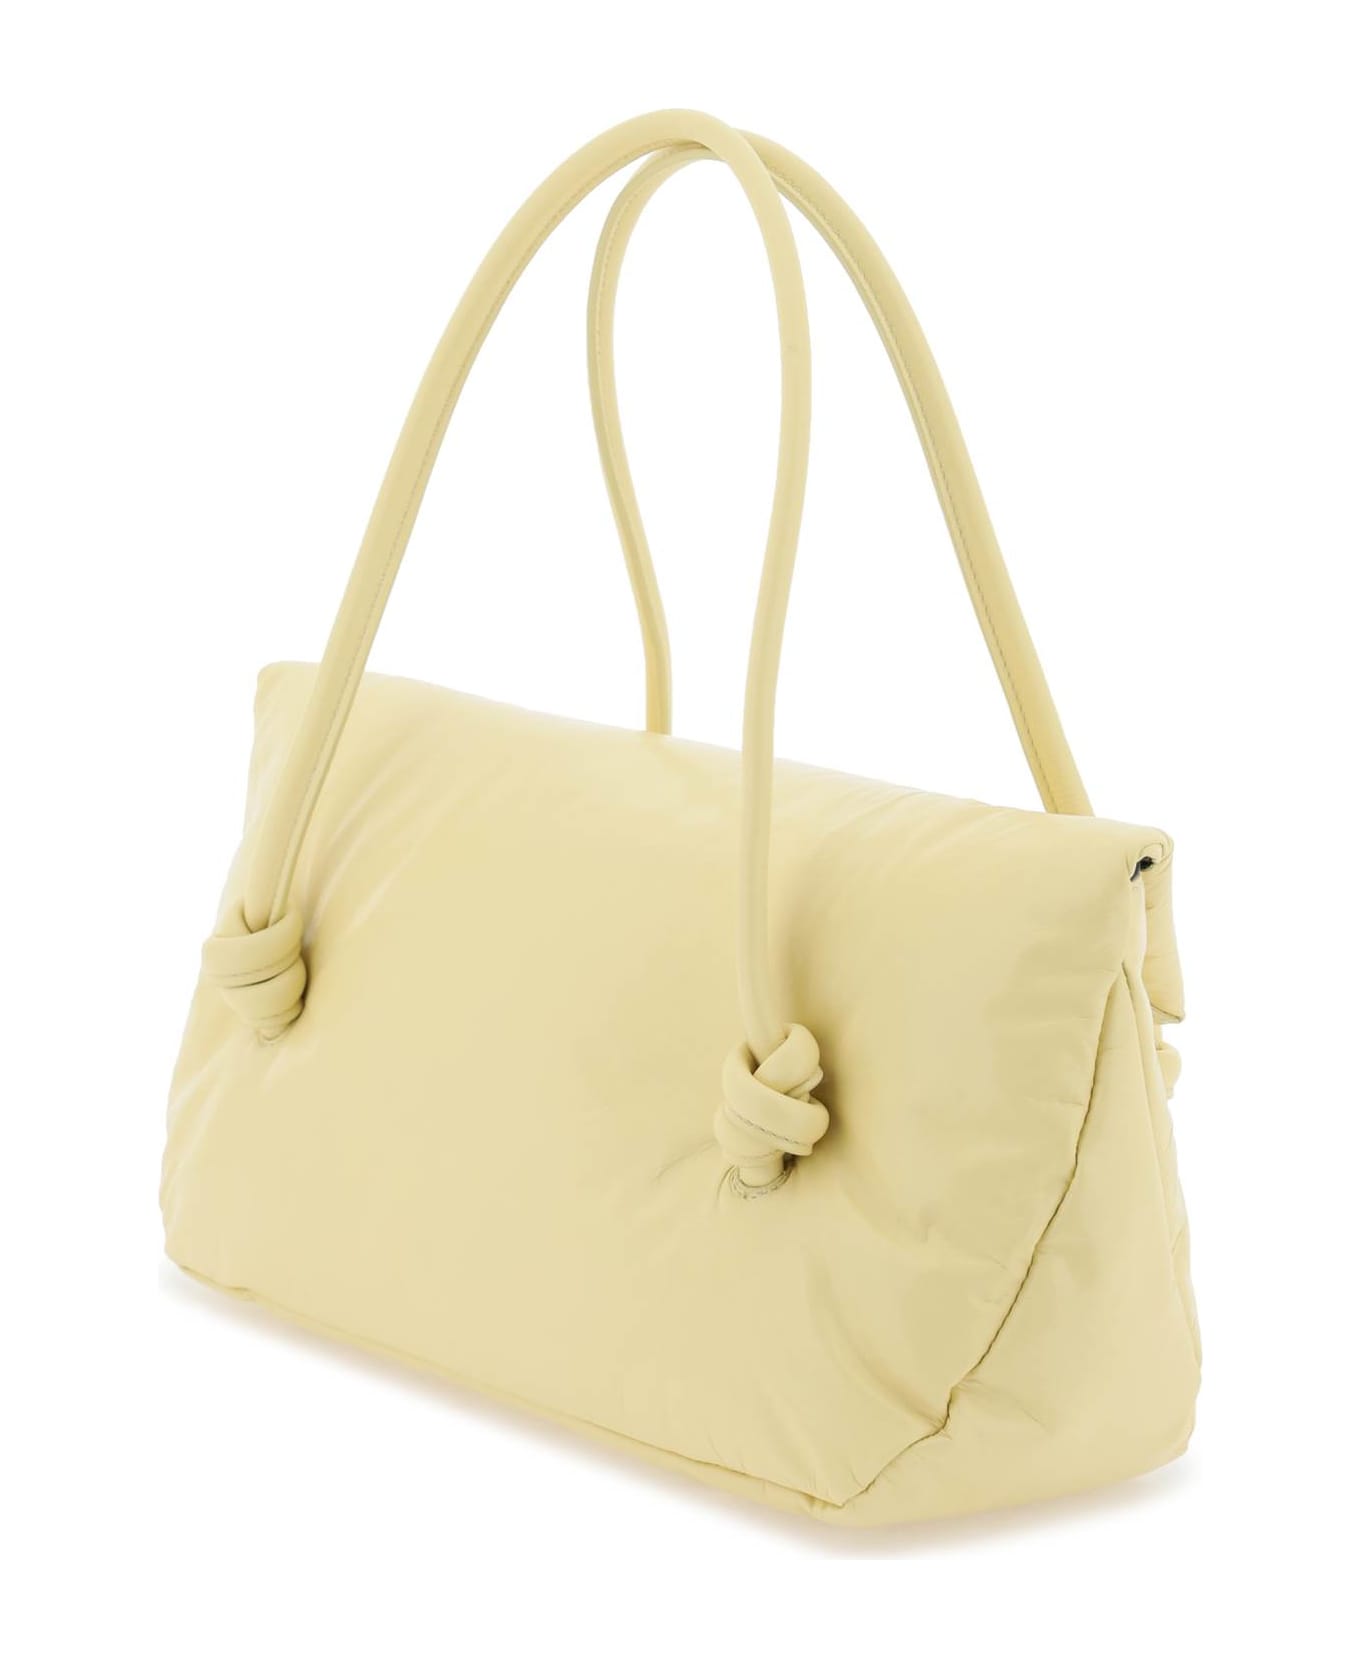 Jil Sander Yellow Leather Bag - OAK (Yellow)